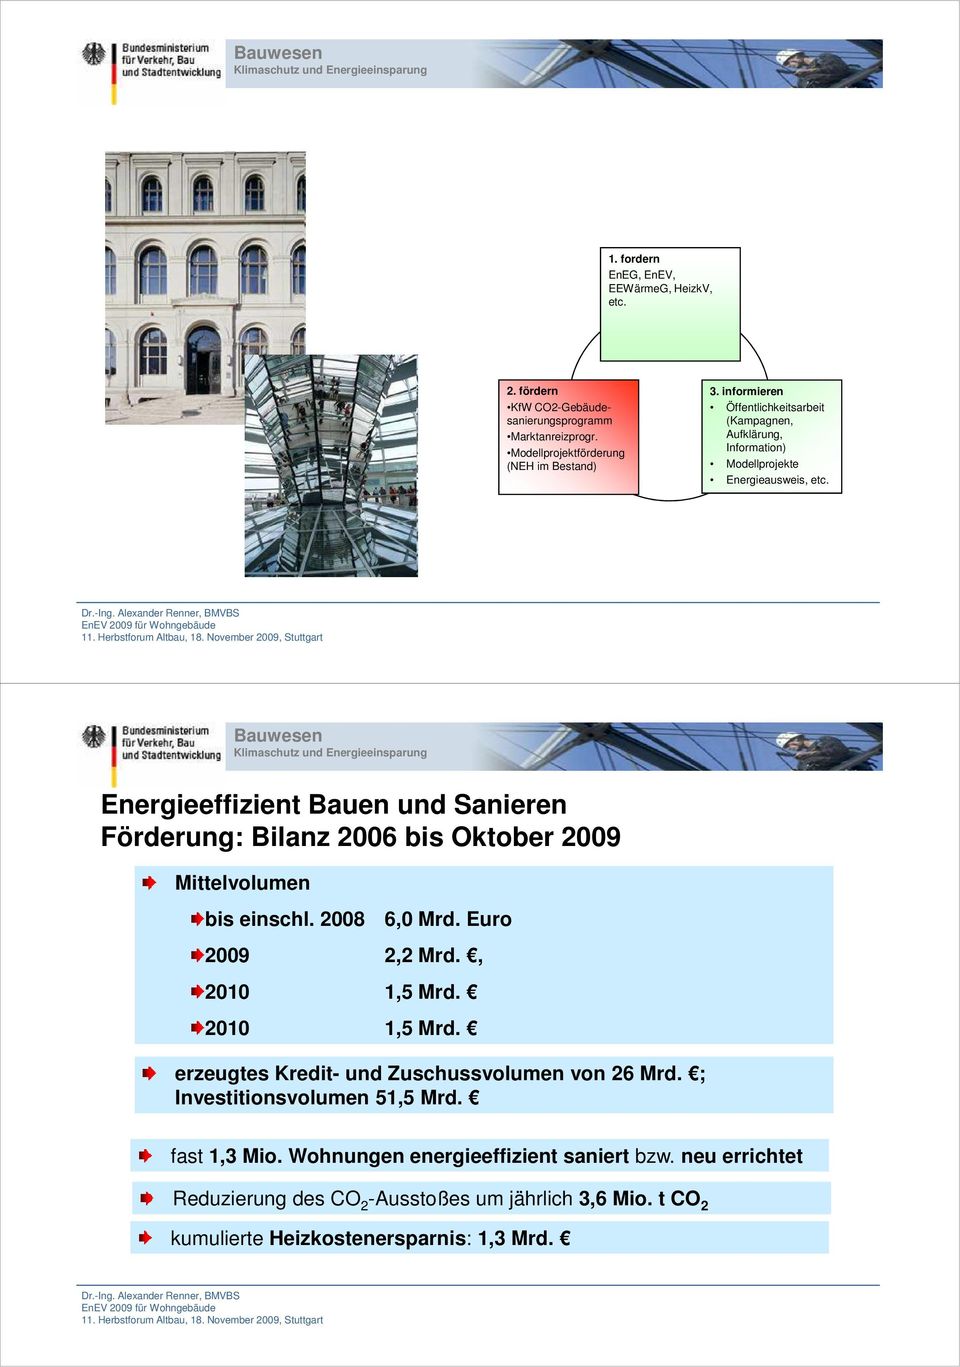 Energieeffizient Bauen und Sanieren Förderung: Bilanz 2006 bis Oktober 2009 Mittelvolumen bis einschl. 2008 6,0 Mrd. Euro 2009 2,2 Mrd., 2010 1,5 Mrd.